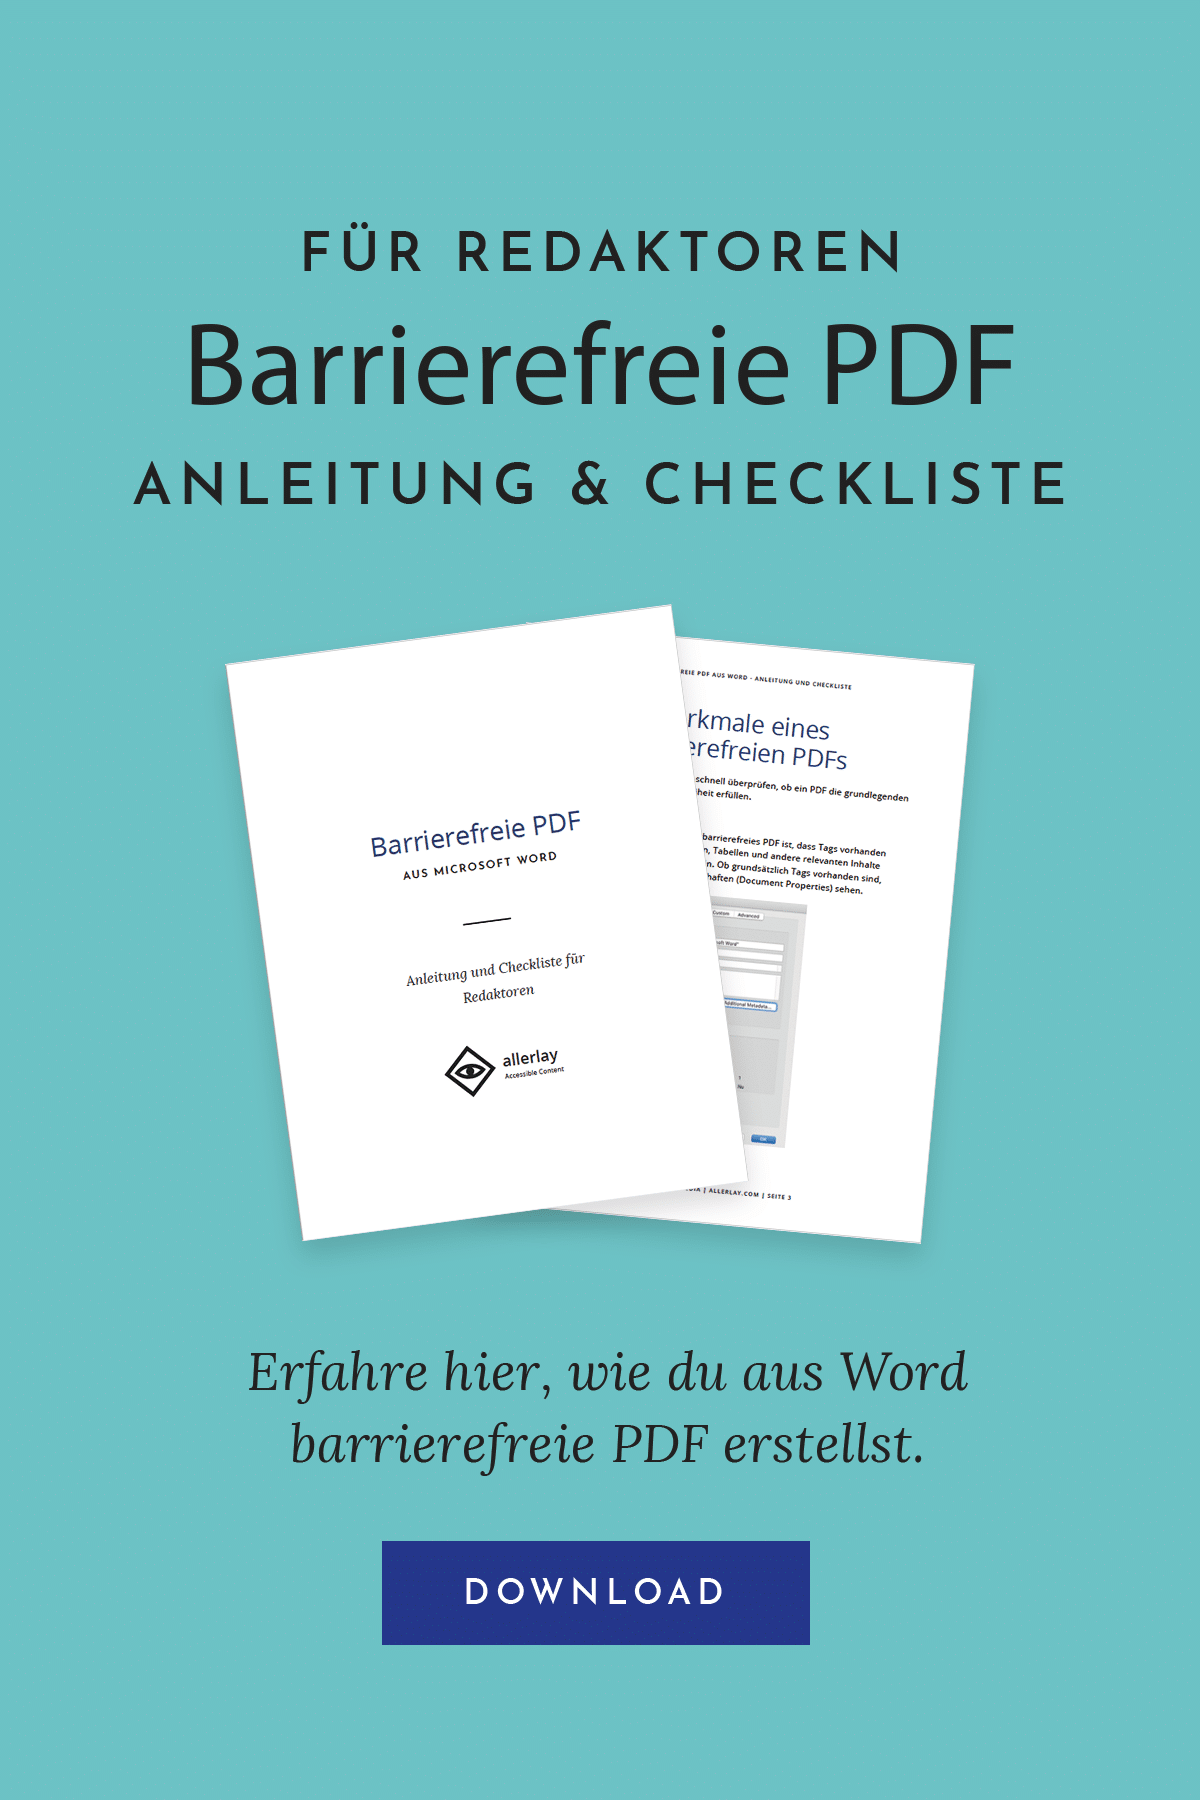 Barrierefreie PDF: Anleitung und Checkliste